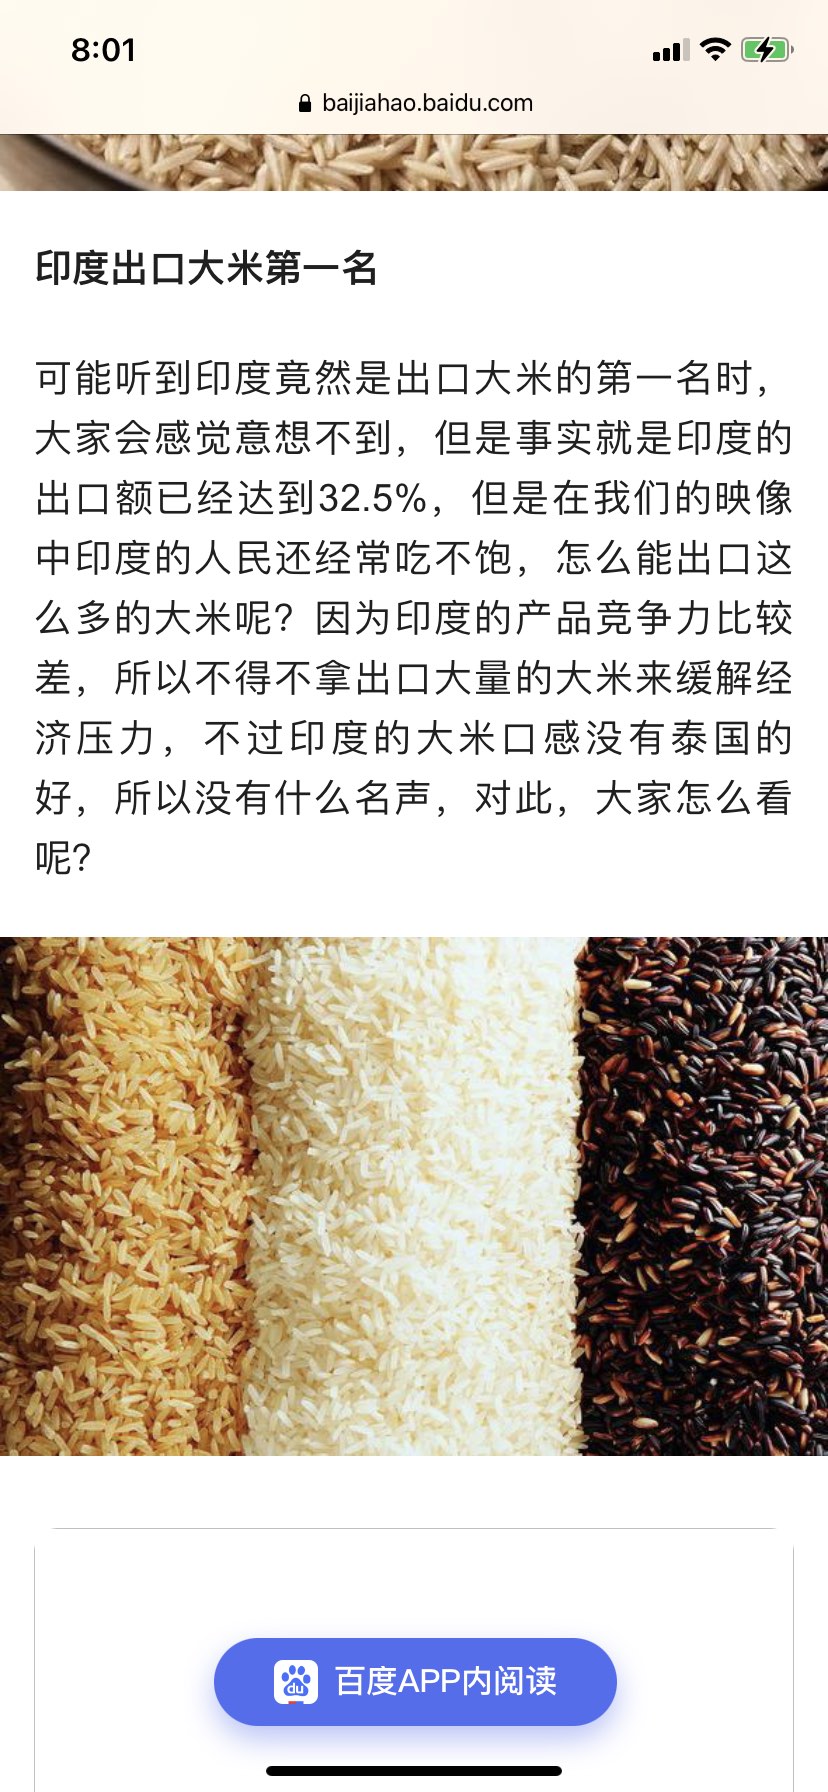 印度多地旱情严重禁止国内碎米出口菲律宾印尼最受伤？